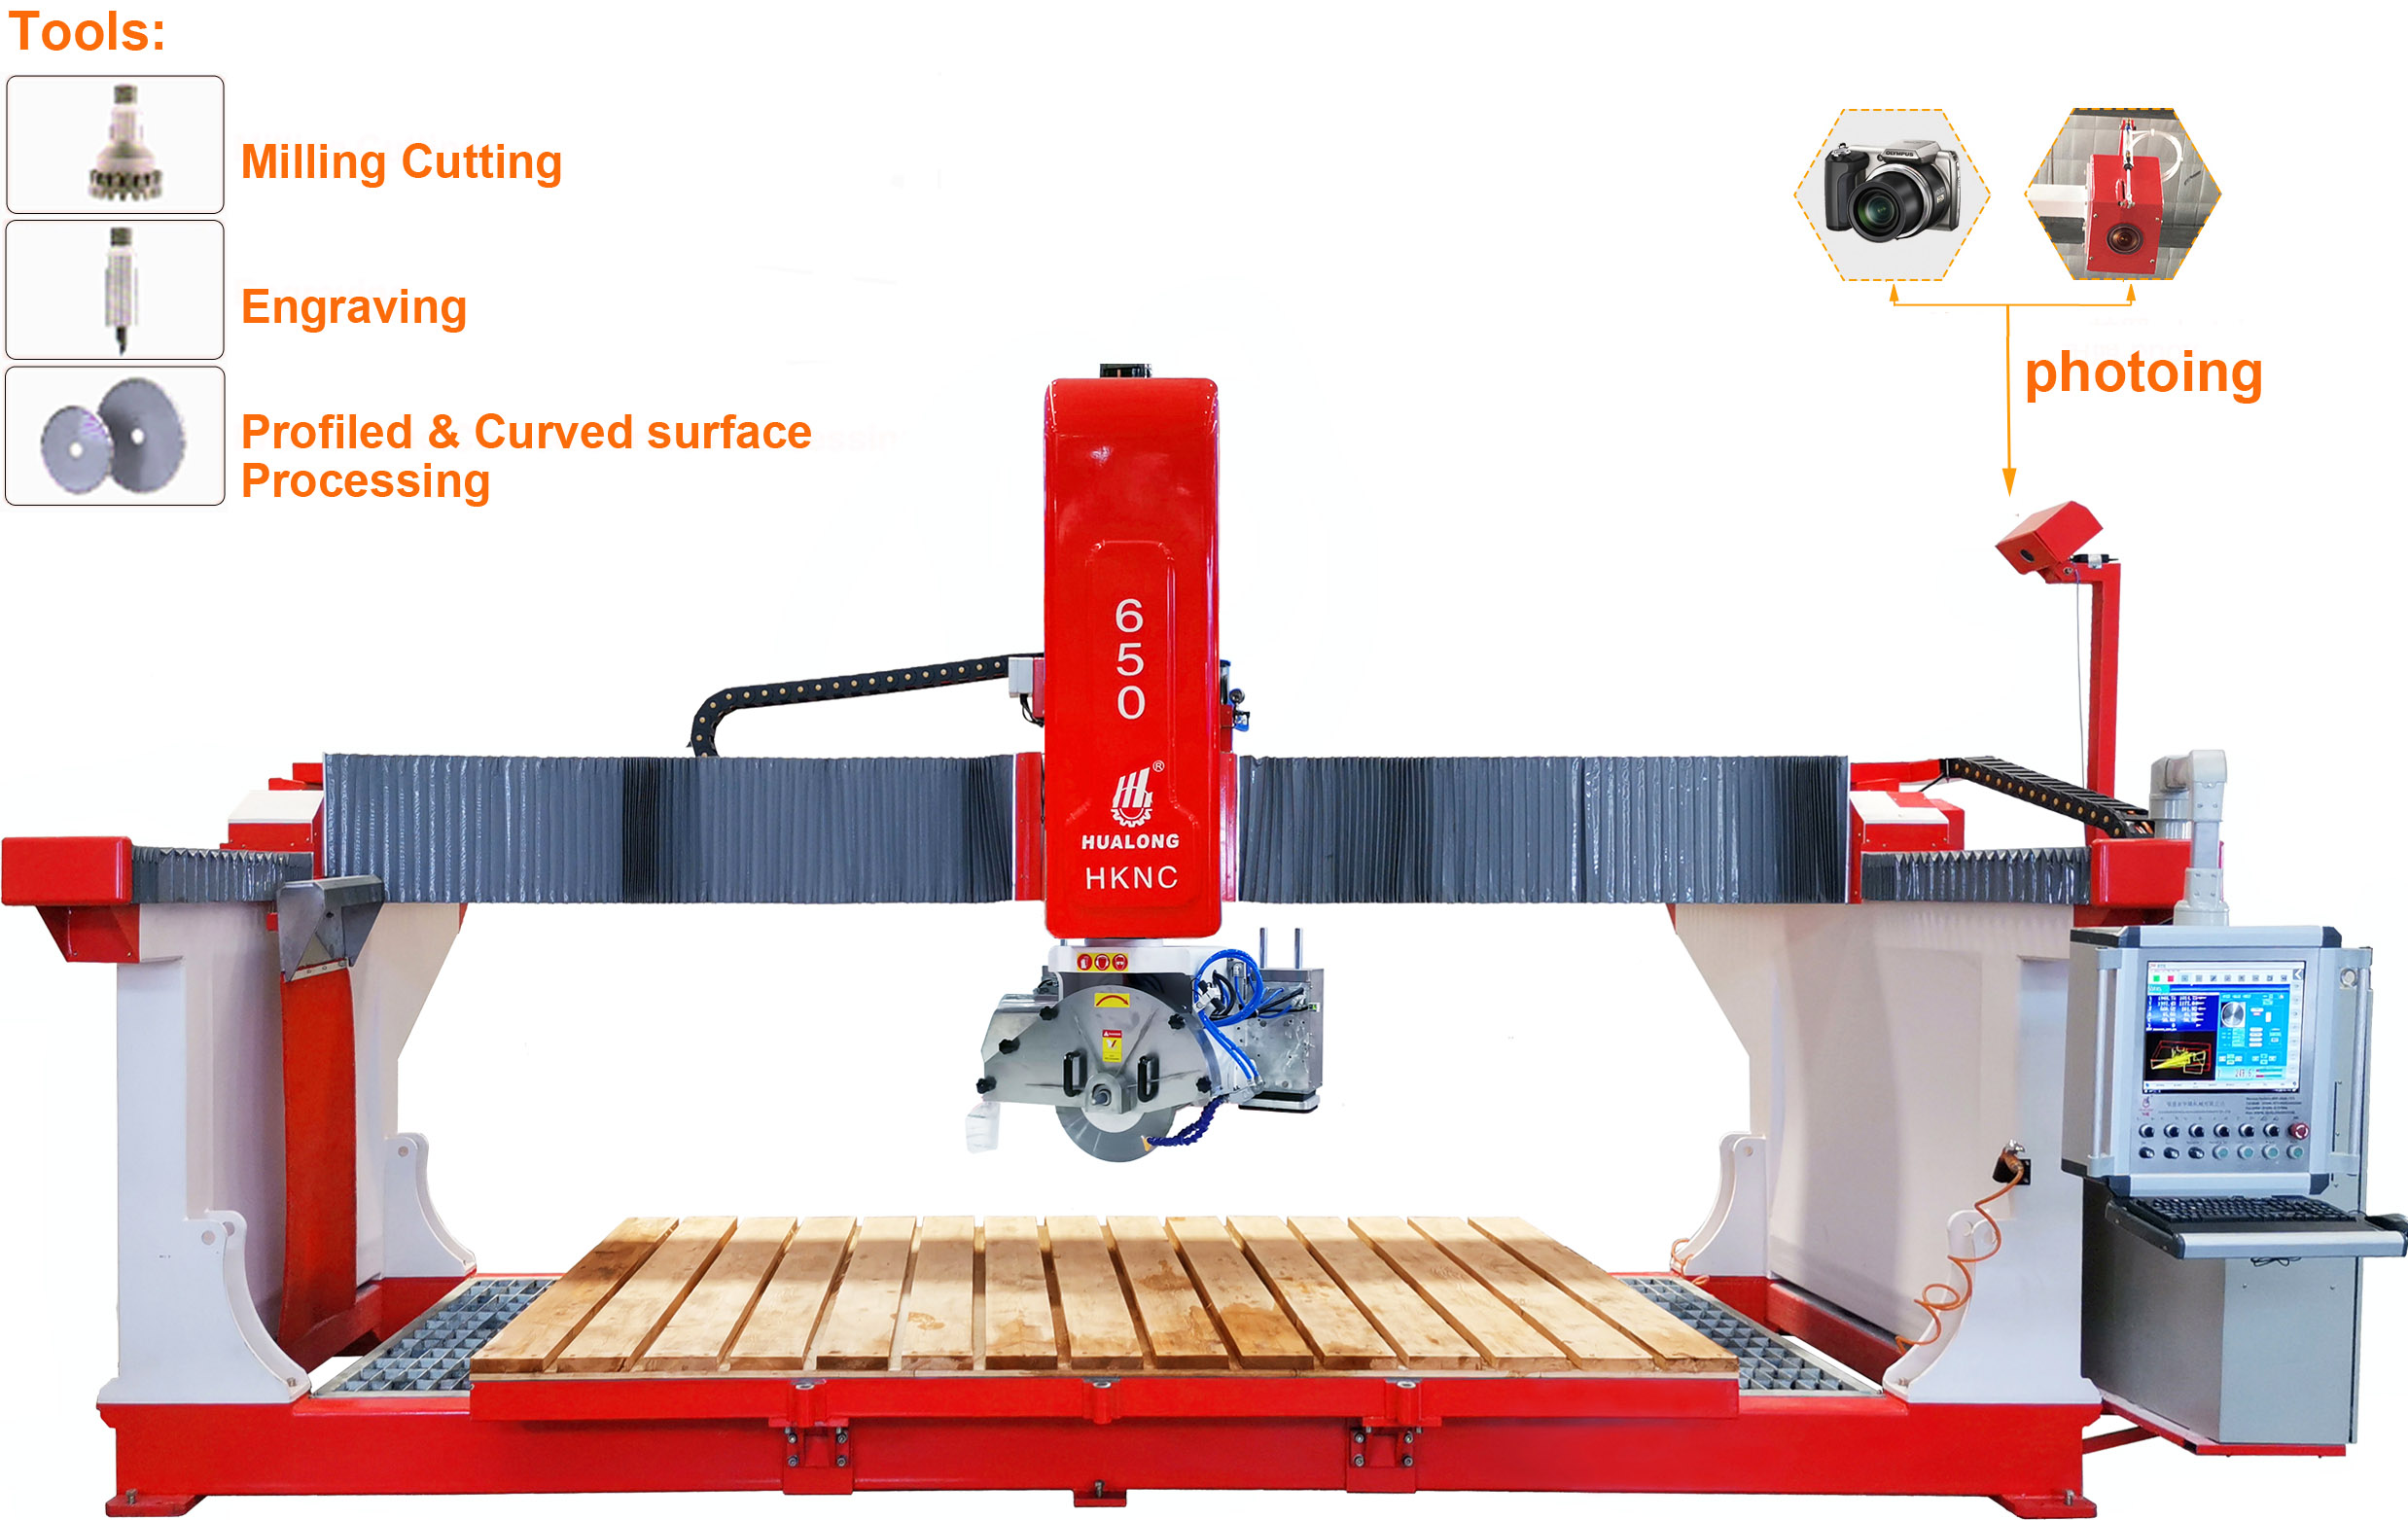 מכונת חיתוך גשר אבן CNC אוטומטית 5 צירים לעיבוד משטחים מורכבים חריטה כרסום קידוח עם ציור CAD